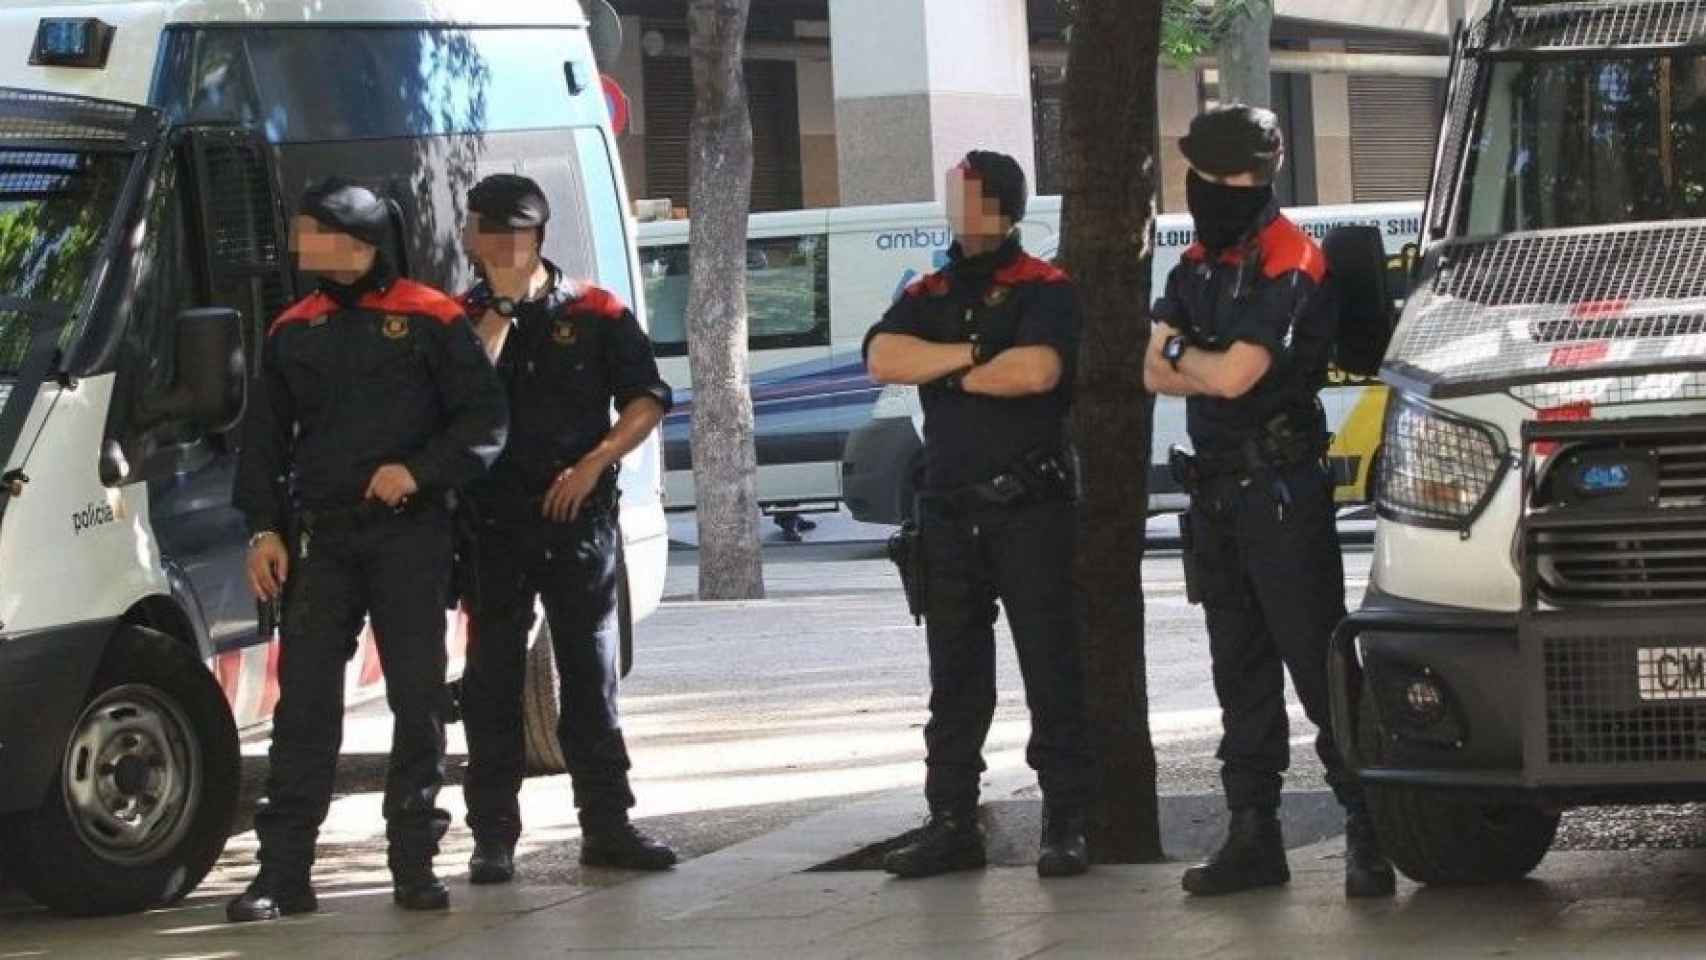 Agentes de los Mossos d'Esquadra, cuerpo policial que ha desalojado una rave en una masía / EFE